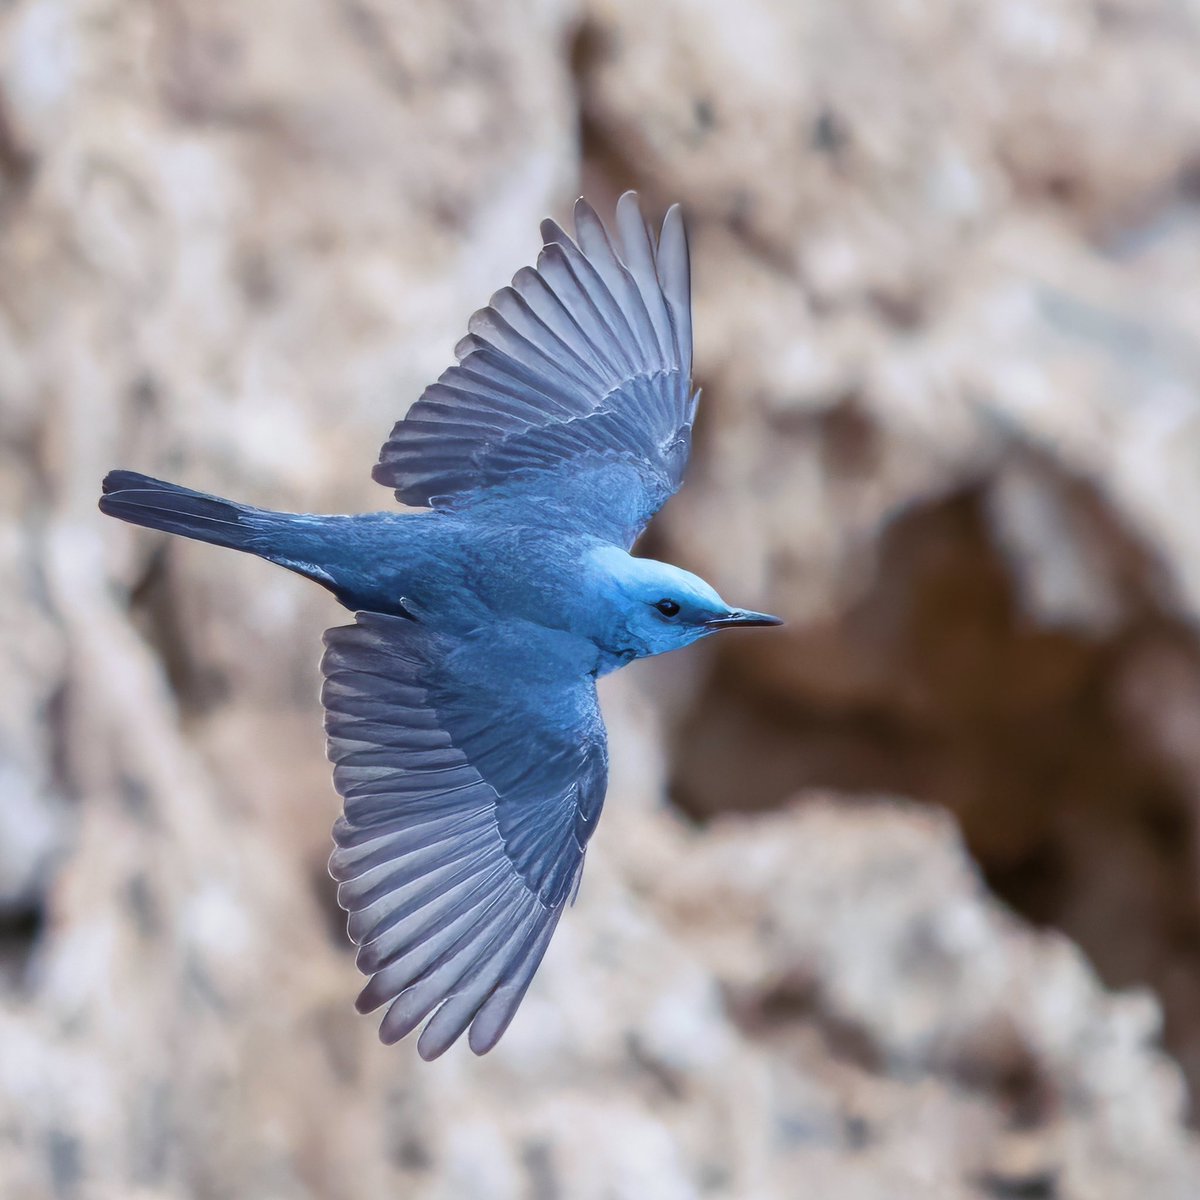 GÖKARDIÇ
Blue-Rock Thrush 

#trakus #birding_photography #birdingantalya #birdsofinstagram #nut_about_birds #kuş #bird #birdsonearth #1x  #bluerockthrush #bluebird #bluebirds